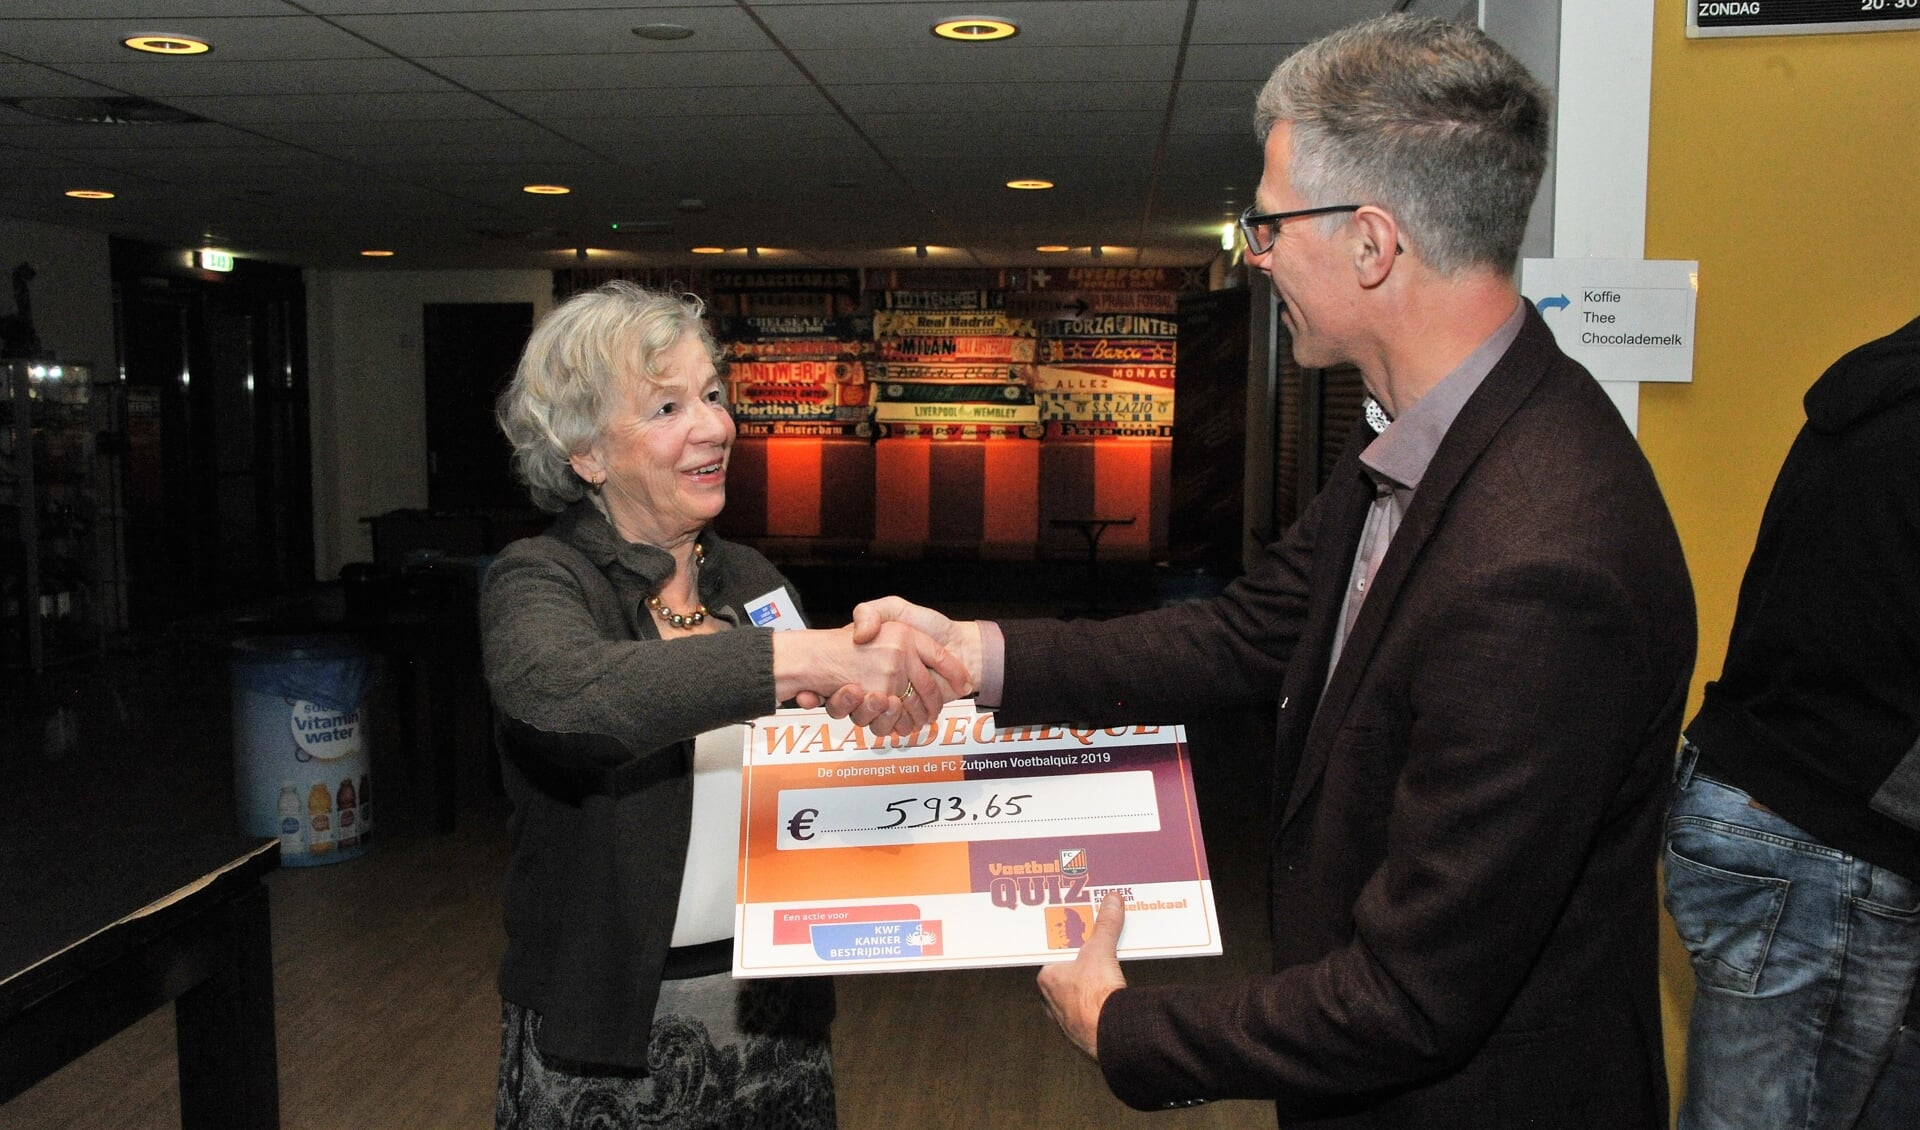 De cheque wordt overhandigd aan de voorzitster van de KWF afdeling Zutphen. Foto: Hans ten Brinke